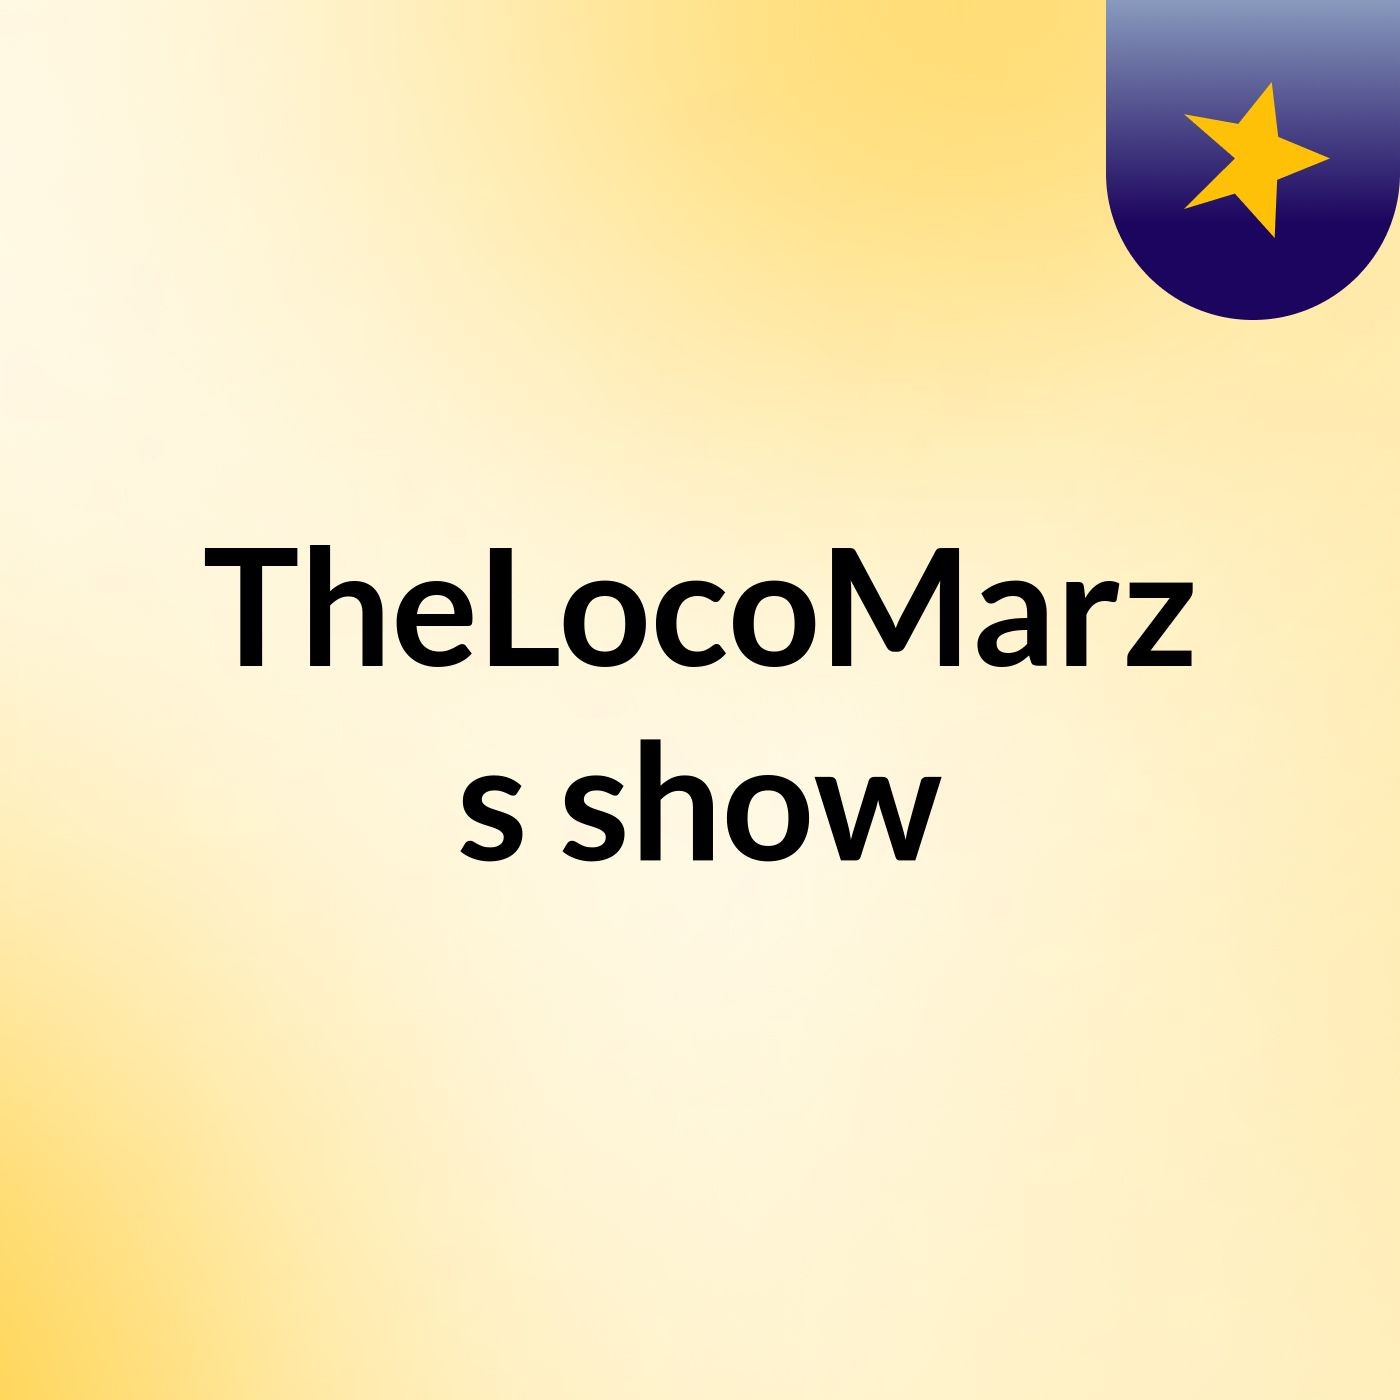 TheLocoMarz's show